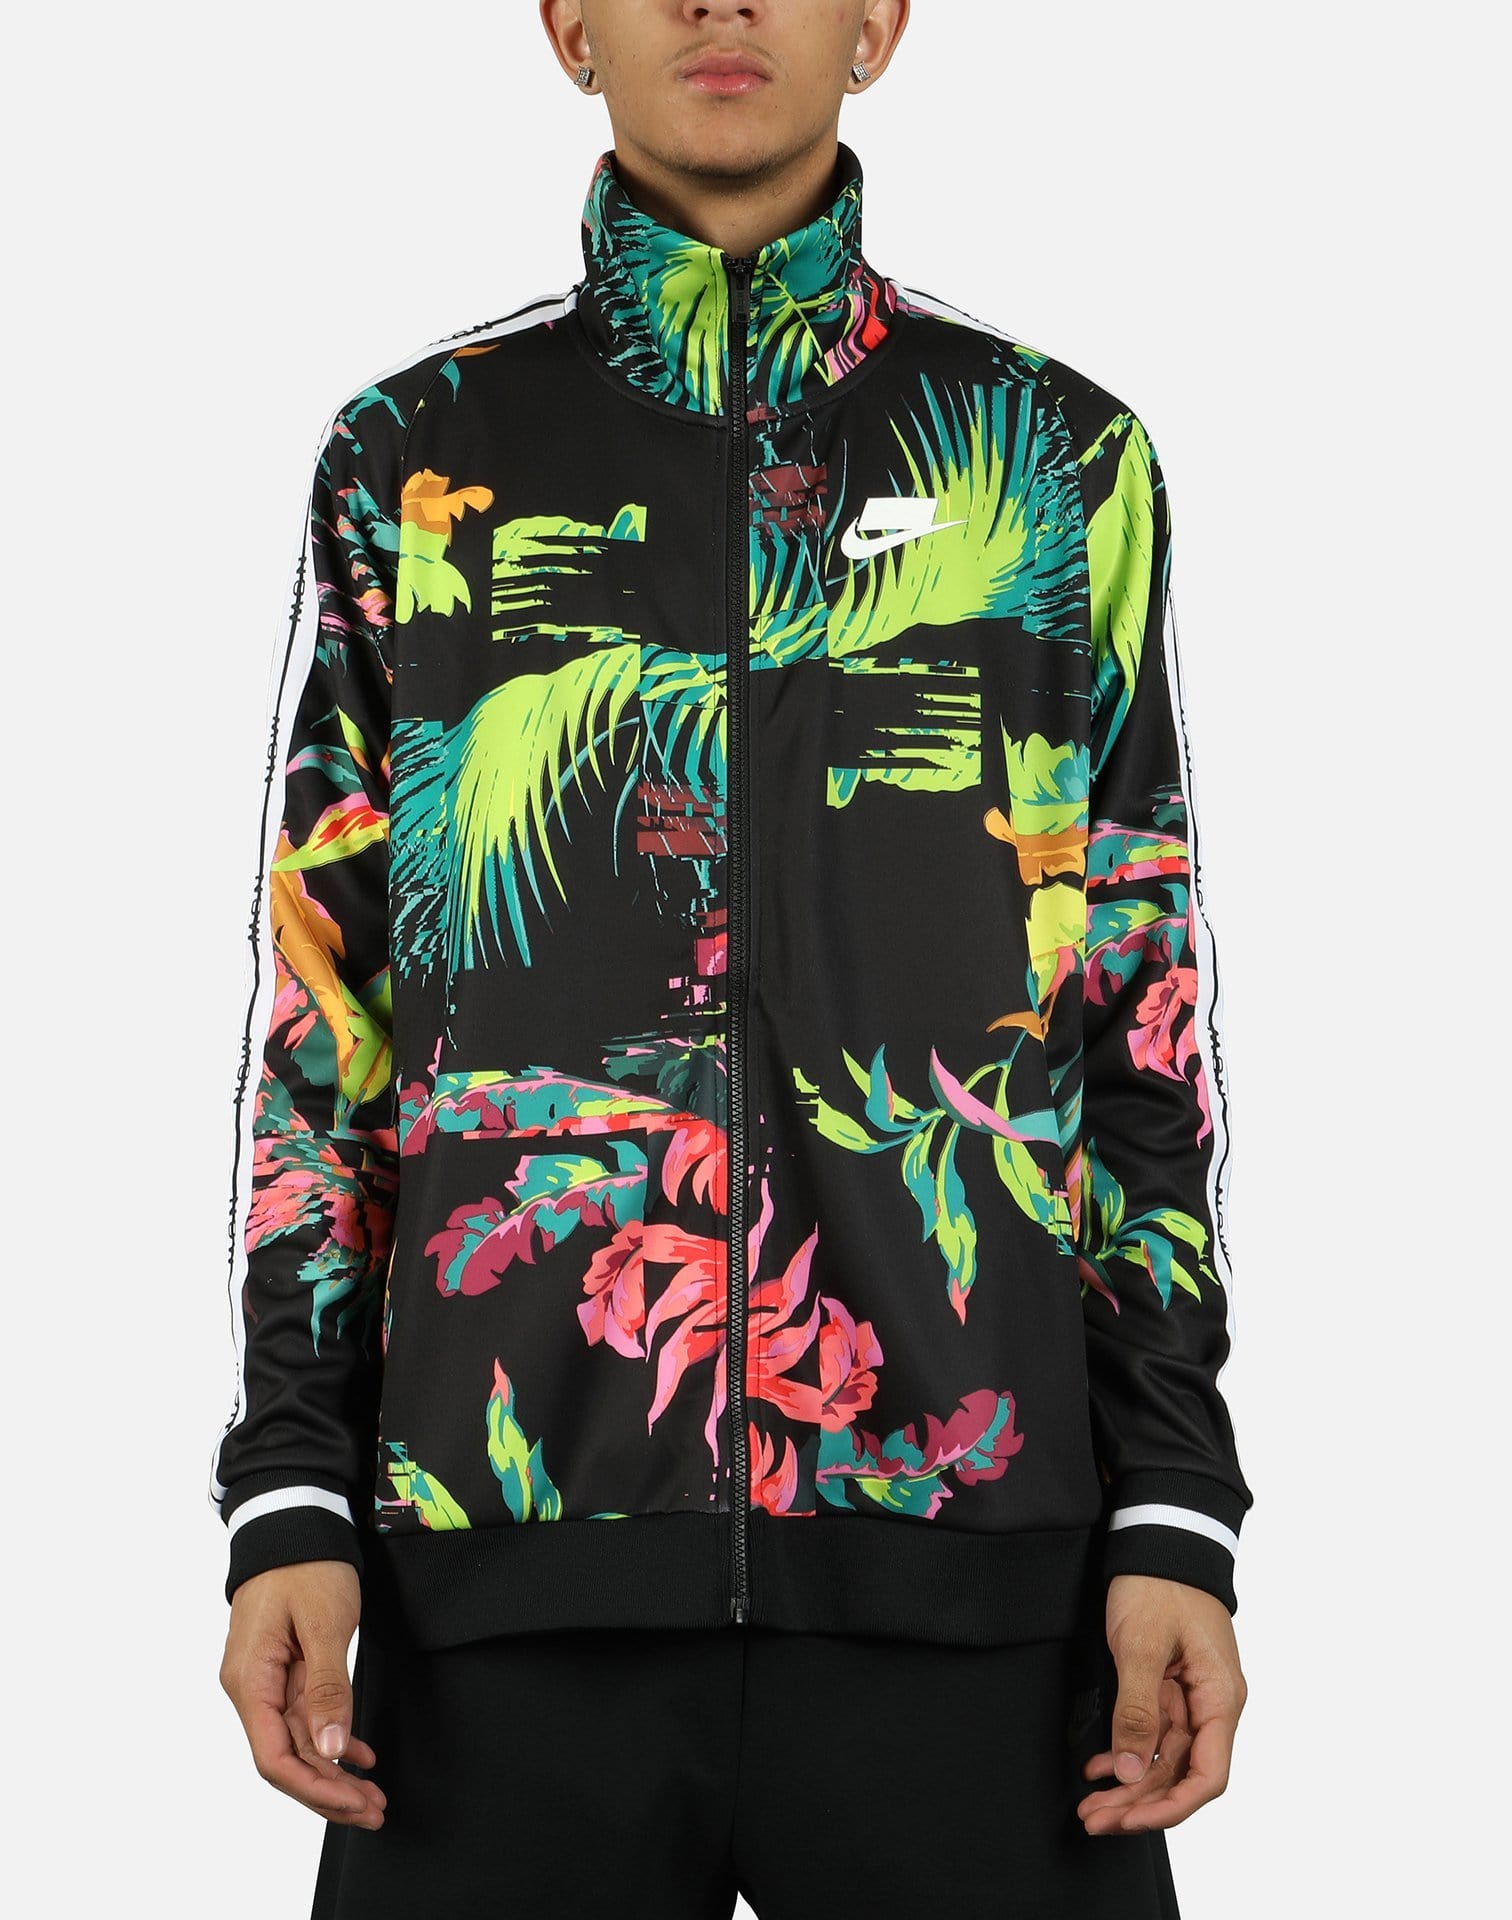 mens floral track jacket